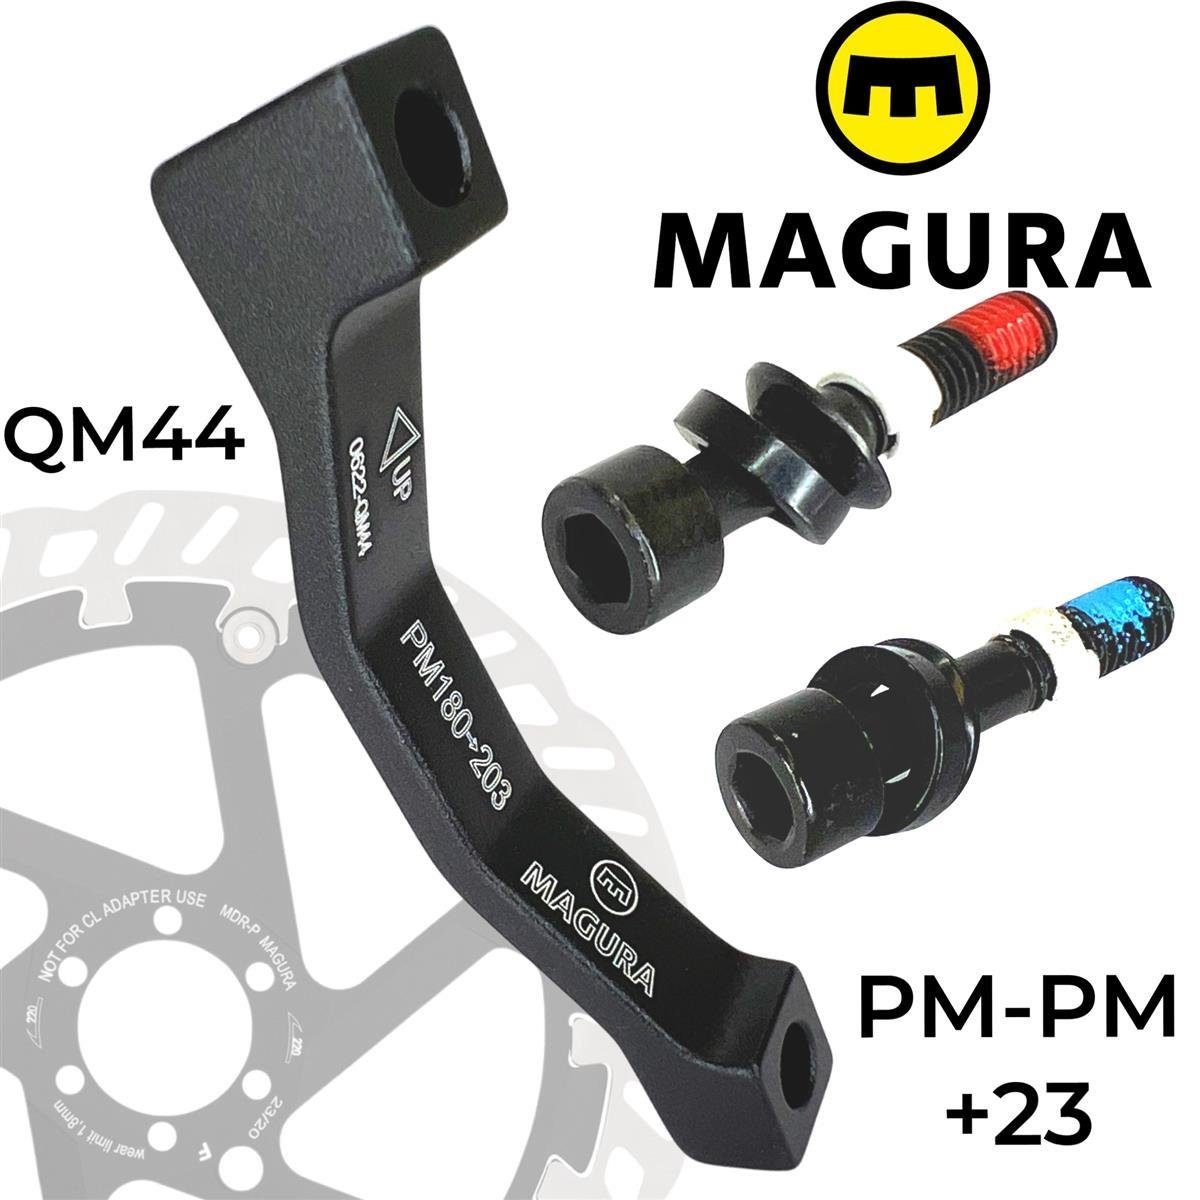 Magura Magura Bremsscheiben 44, PM +23mm Scheibenbremse 180-203 QM Adapter